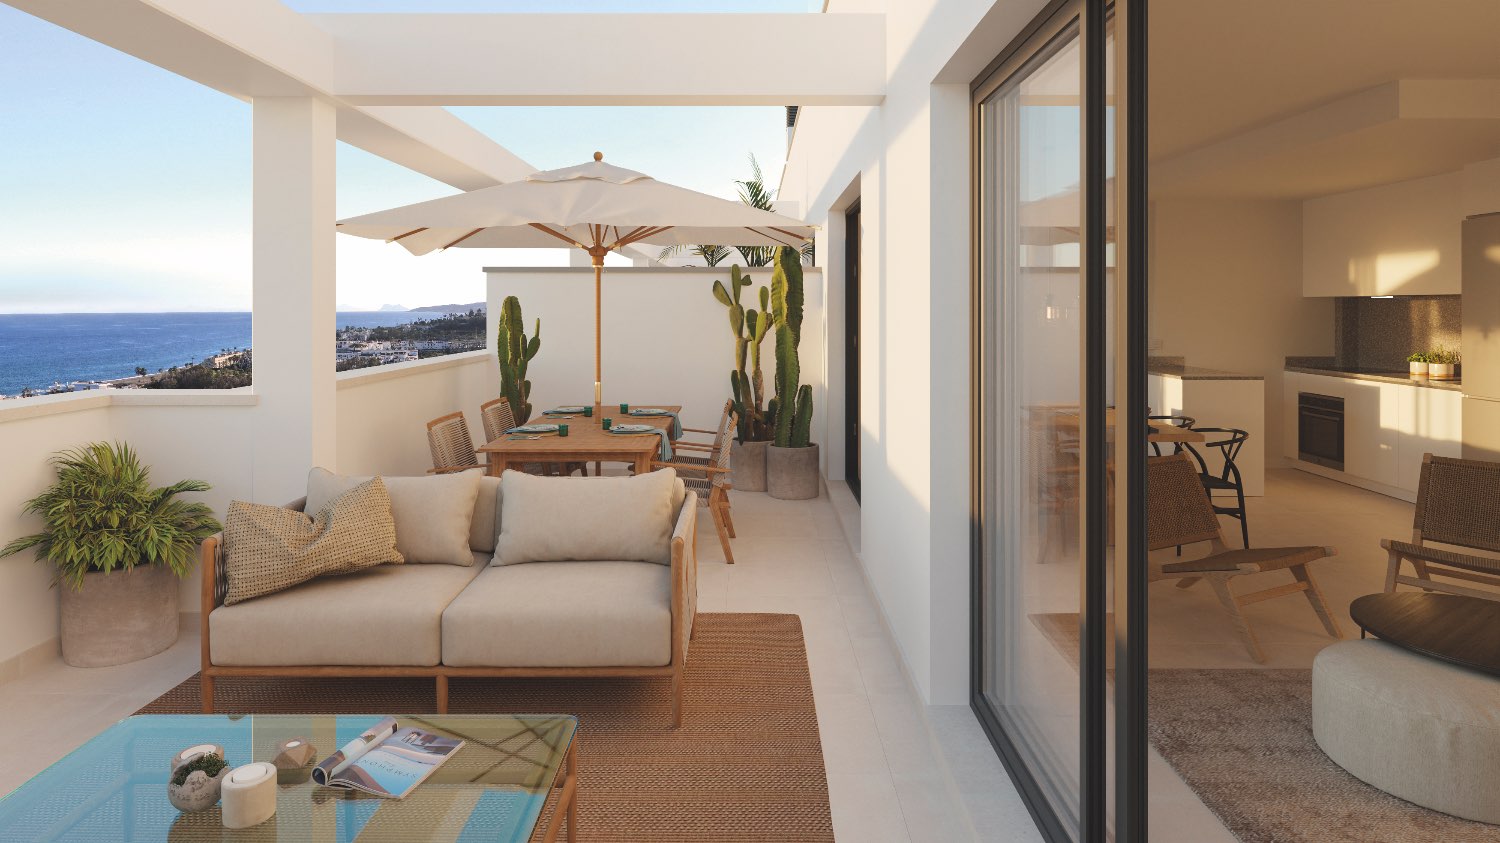 Appartement neuf de 3 chambres dans un nouveau développement à Estepona - Costa del Sol